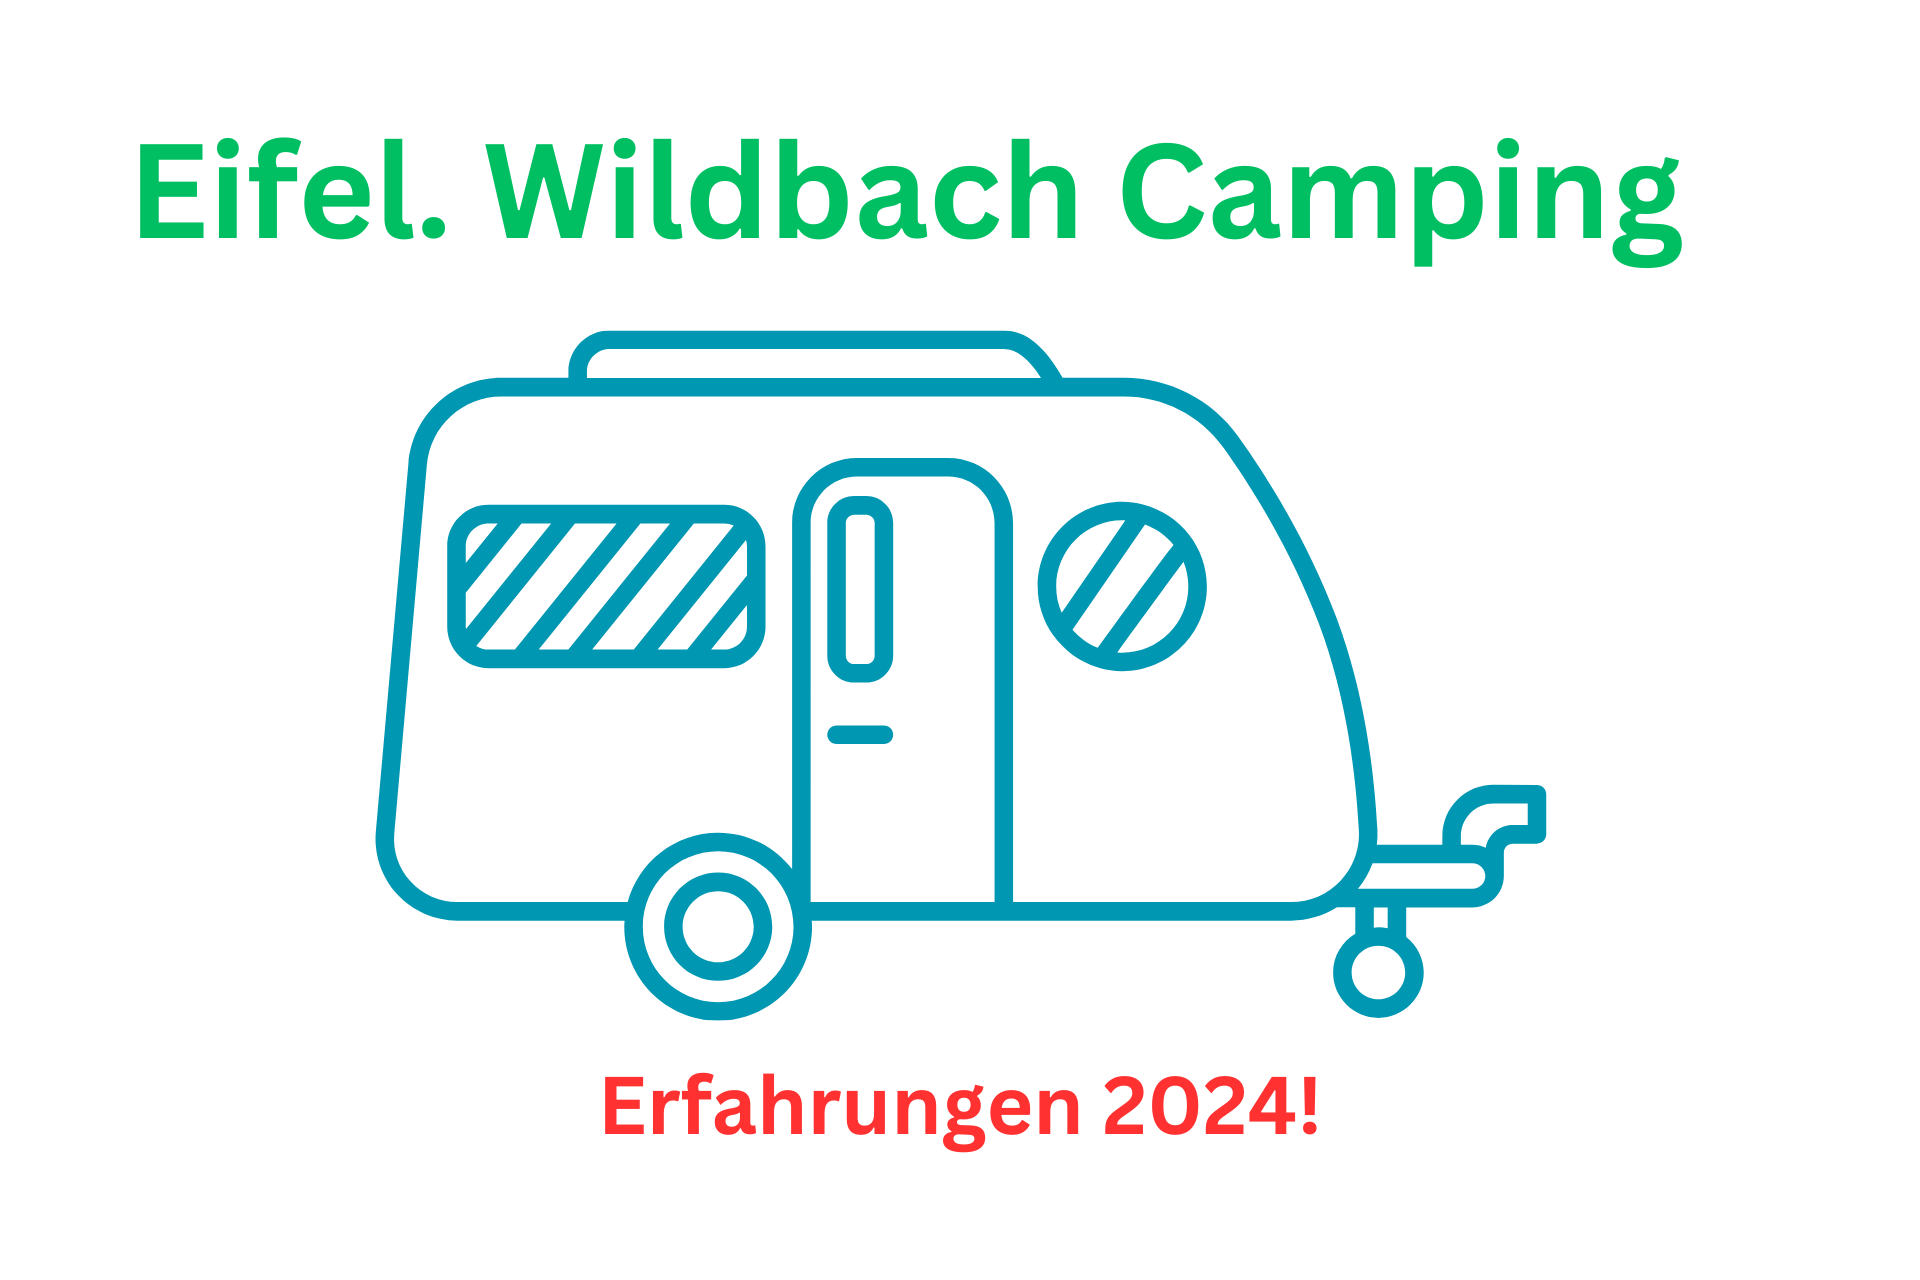 Erfahrungsbericht Eifel. Wildbach Camping